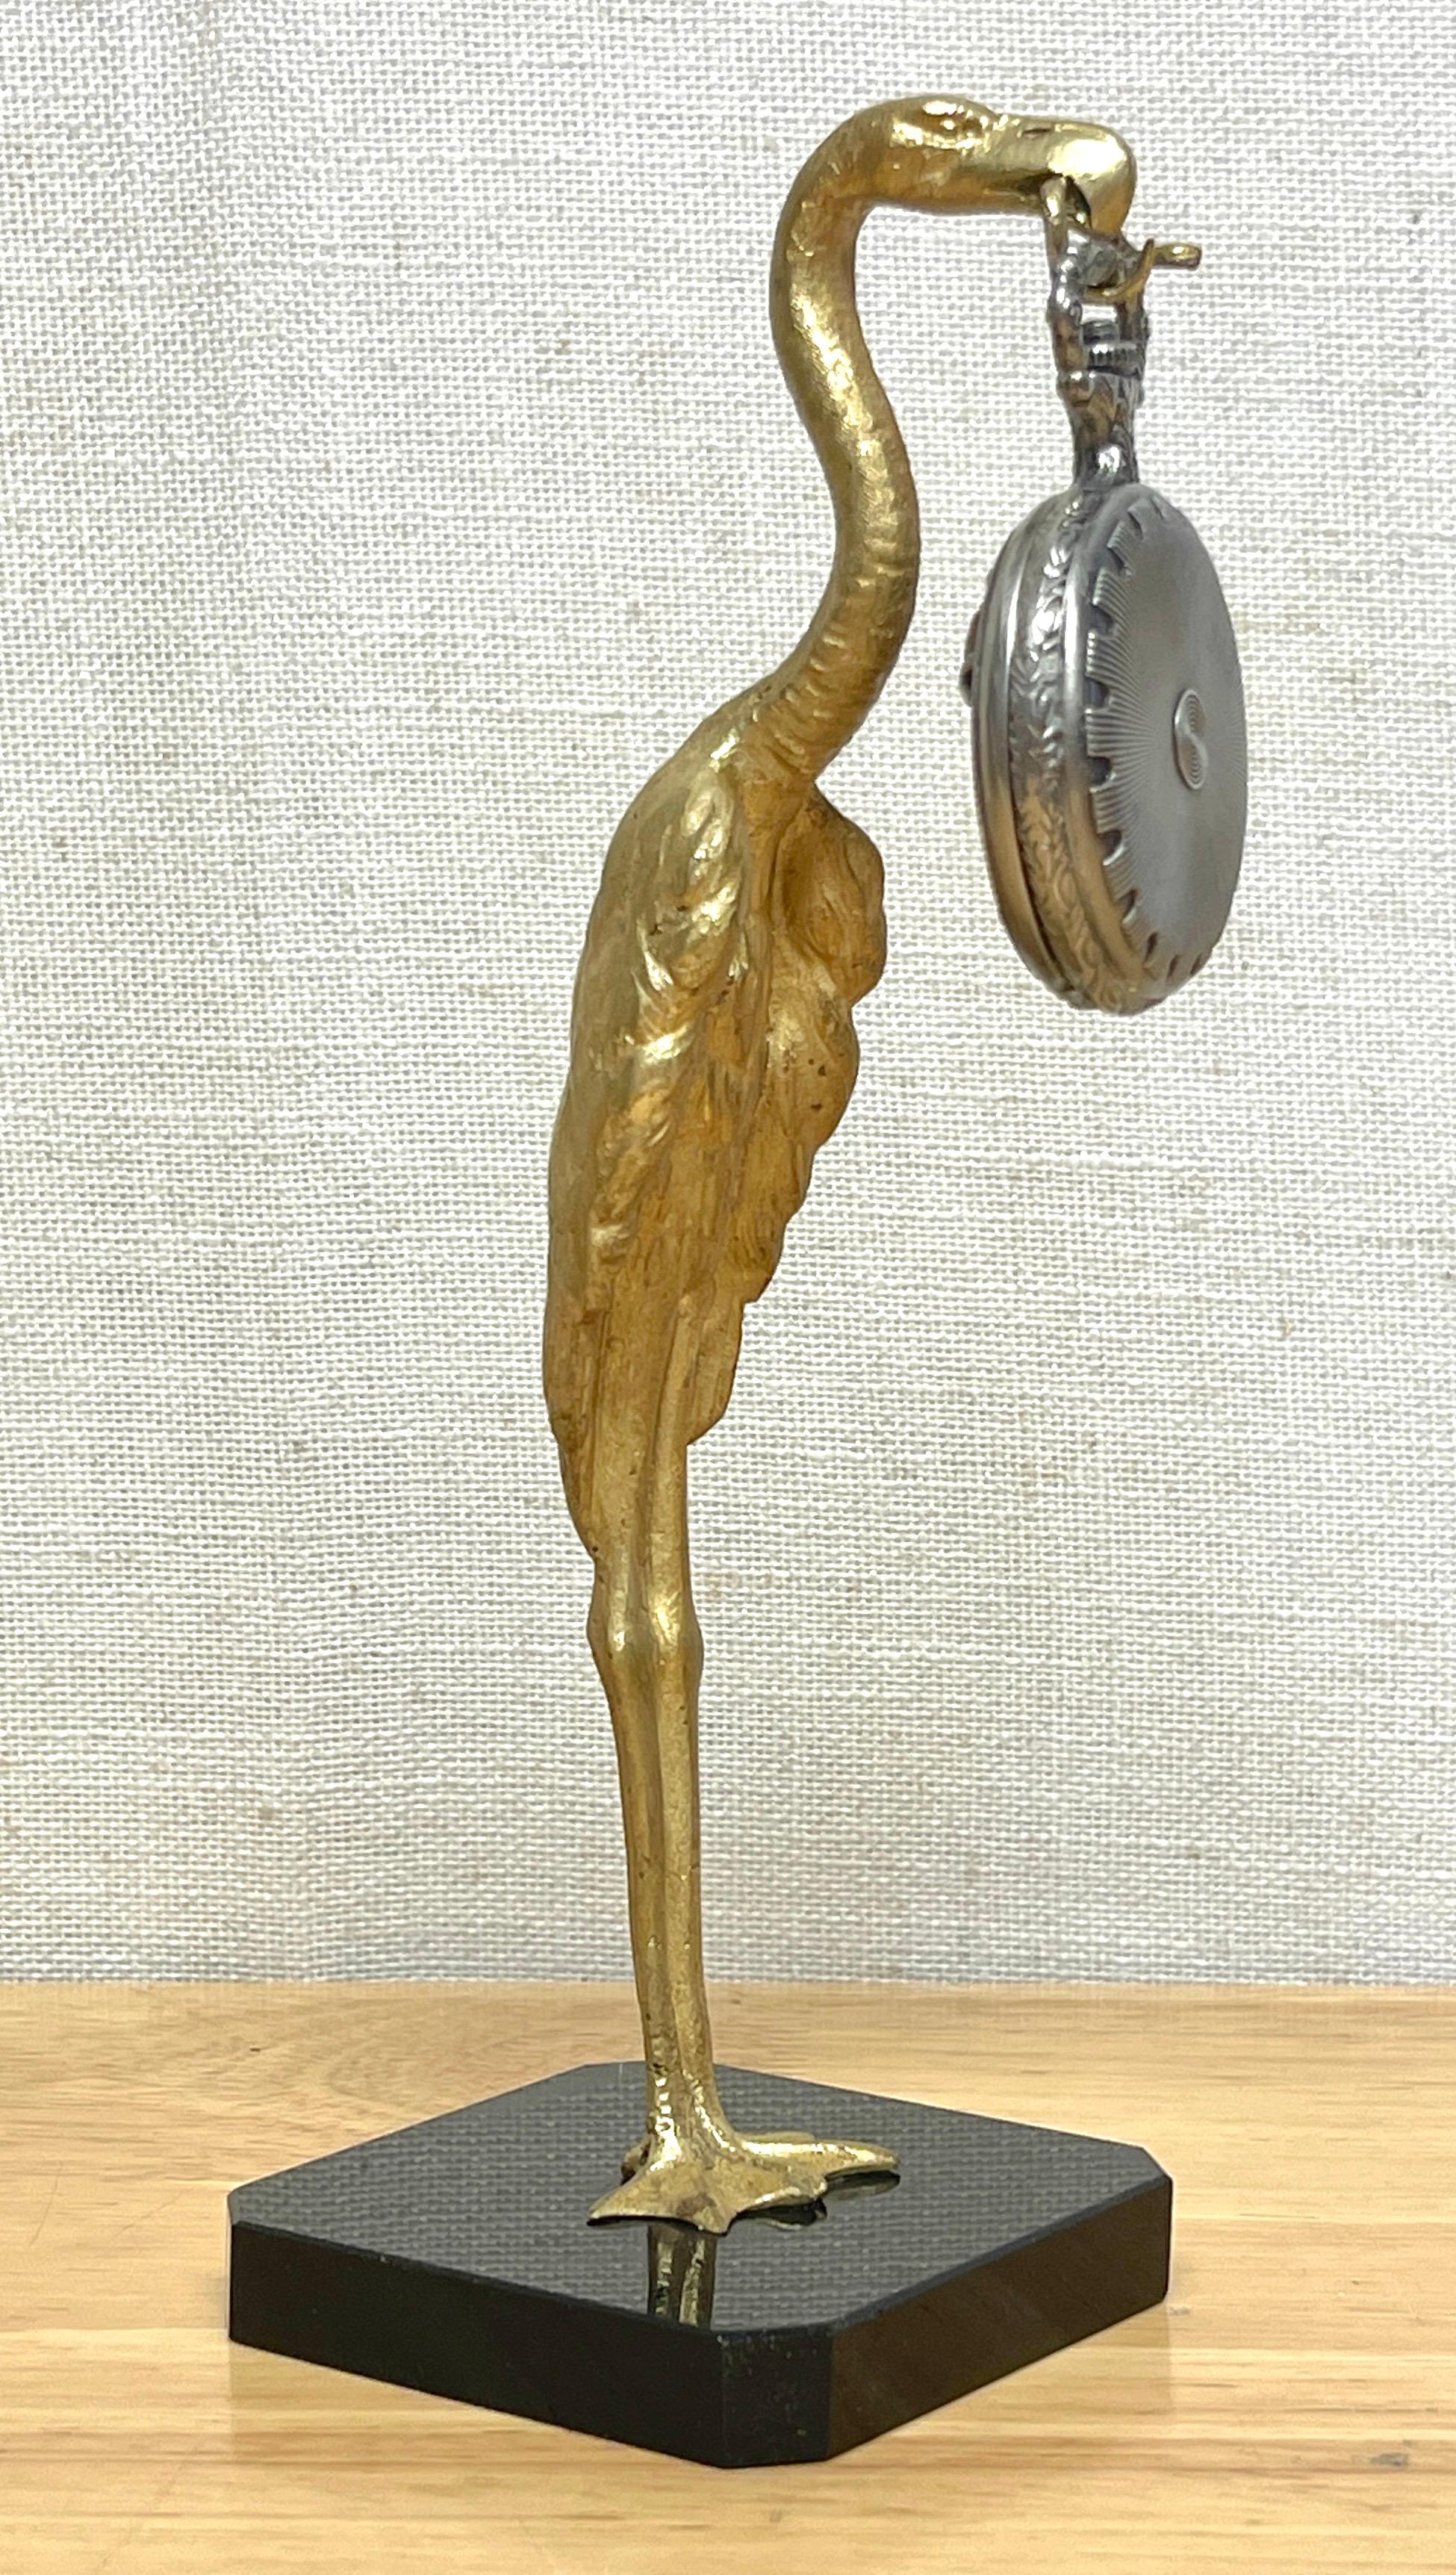 Porte-montre de poche en bronze doré à l'oiseau et au serpent, Art déco français
France, Vers 1920
Figurine en bronze doré coulée et modelée de façon réaliste représentant un grand échassier debout, tenant peut-être un flamant ou une cigogne, avec